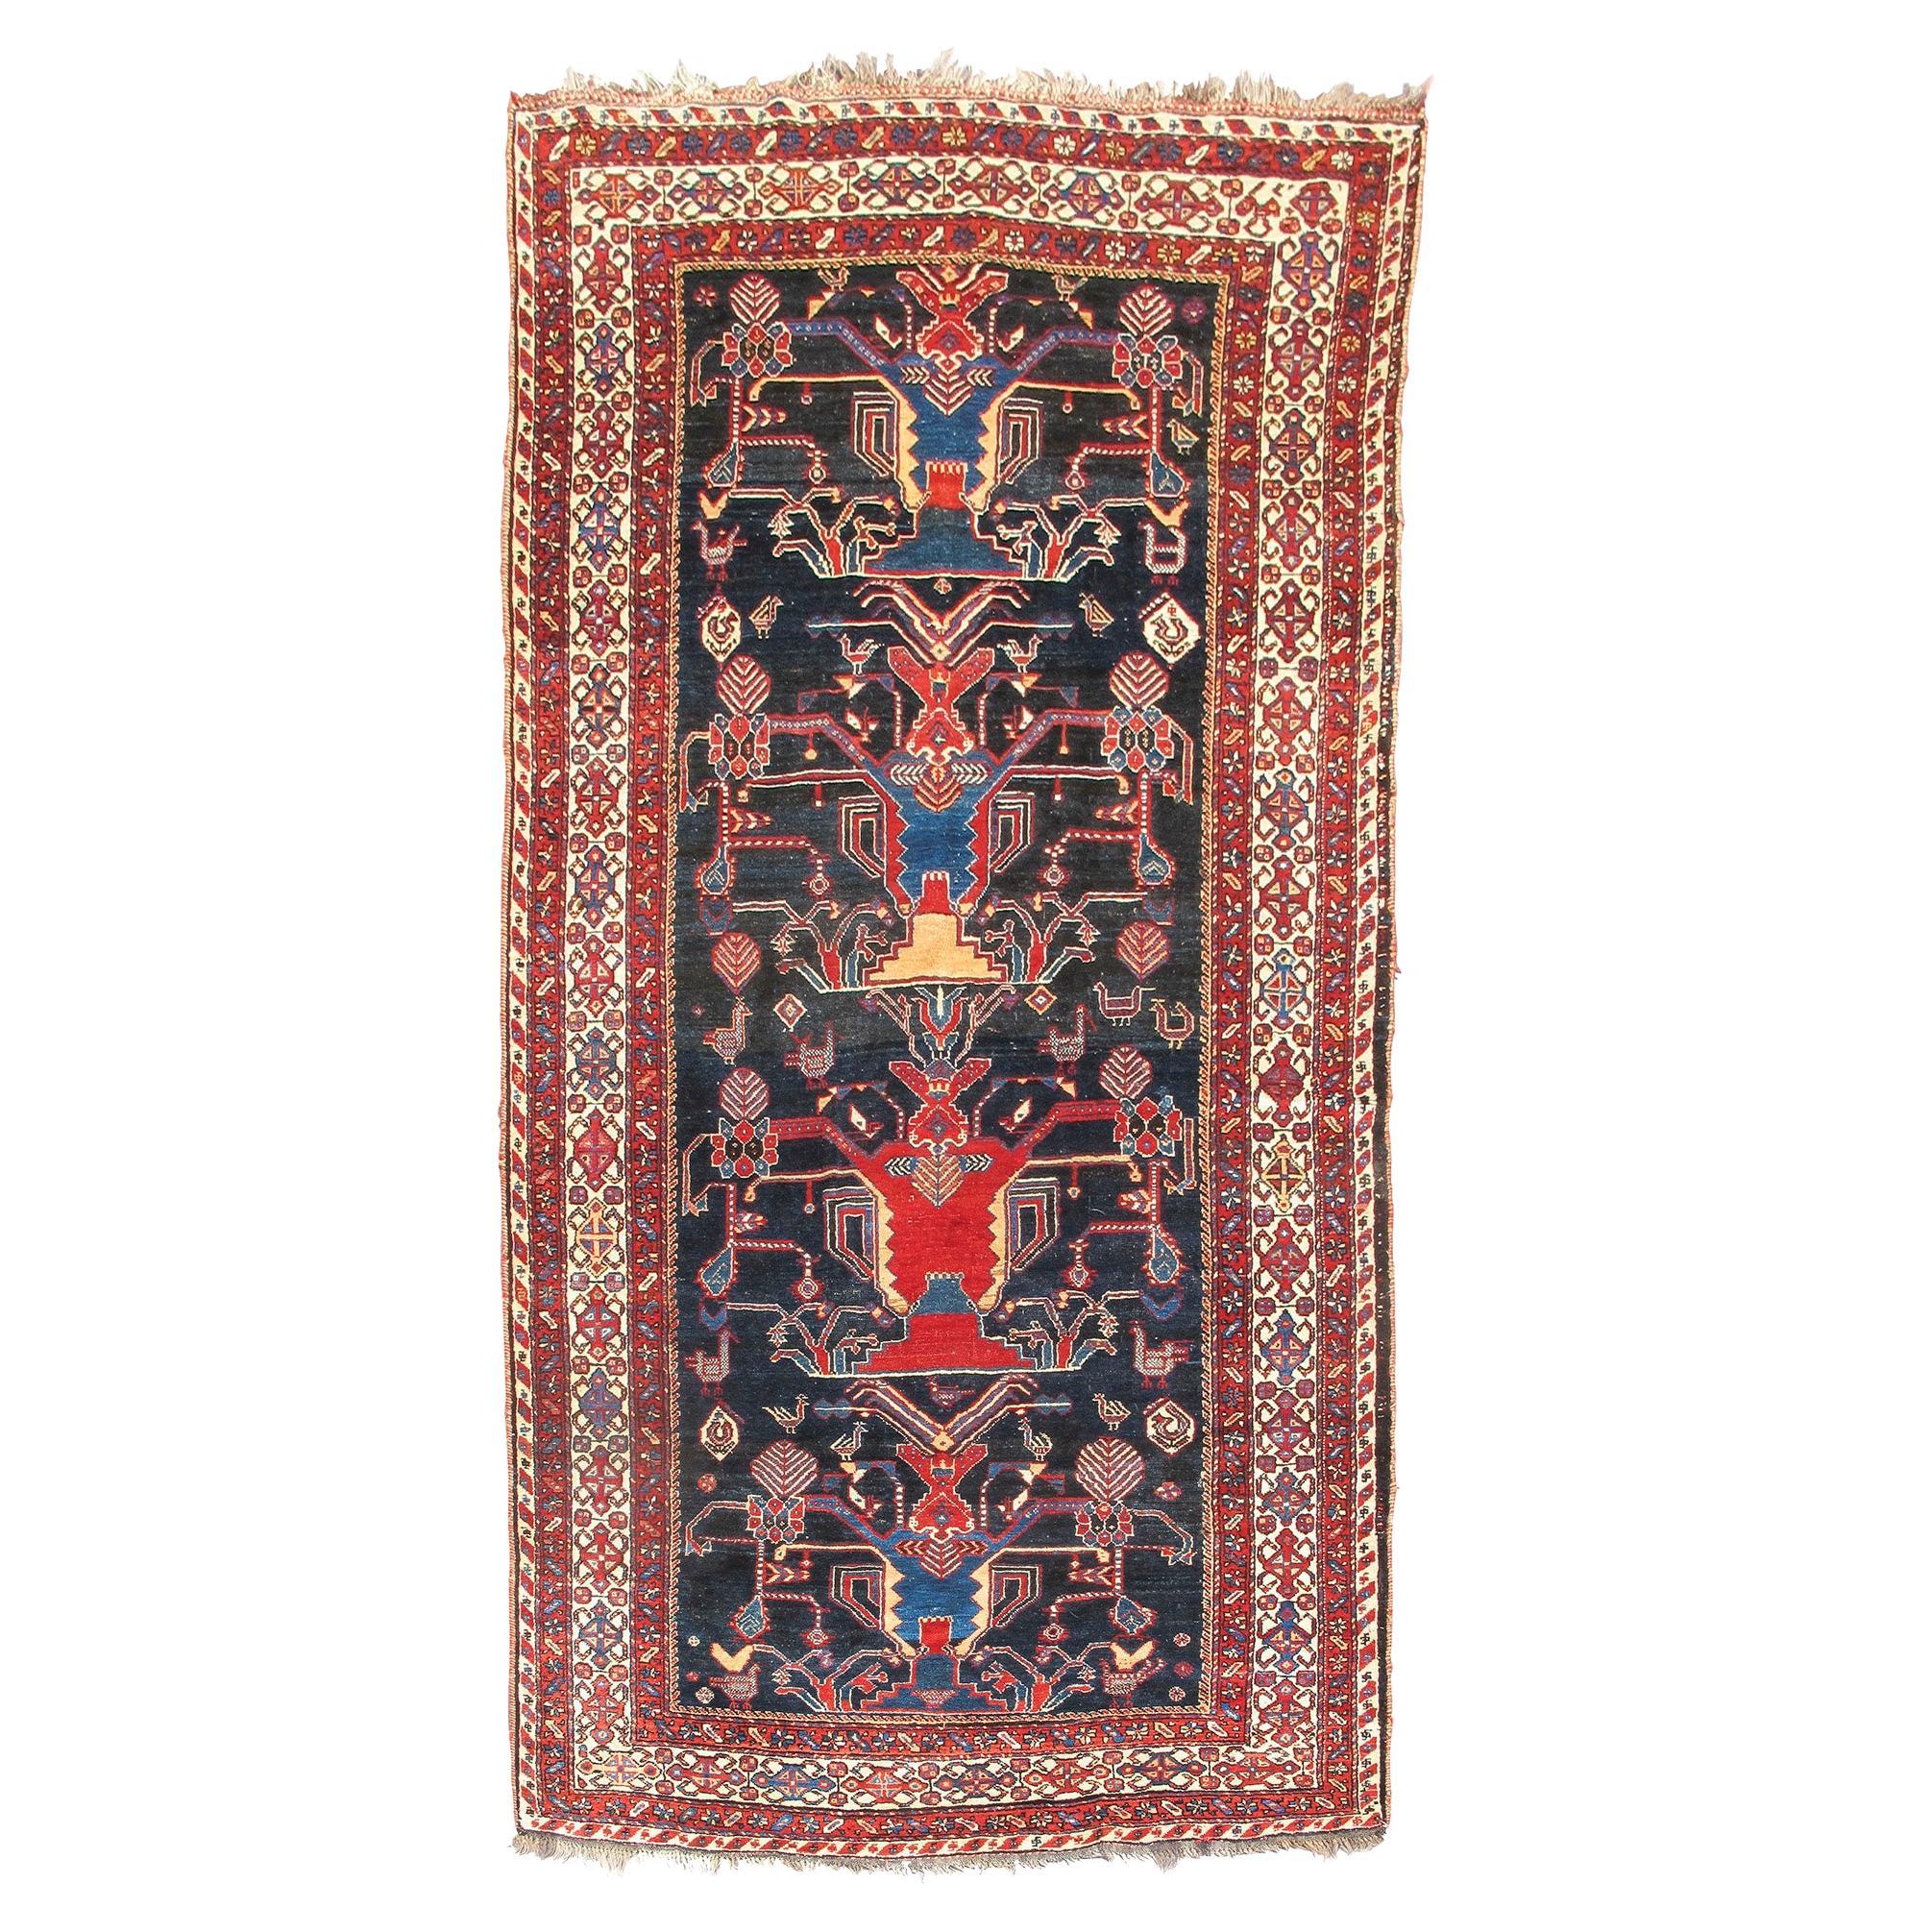 Antique Persian Luri Rug, c. 1900